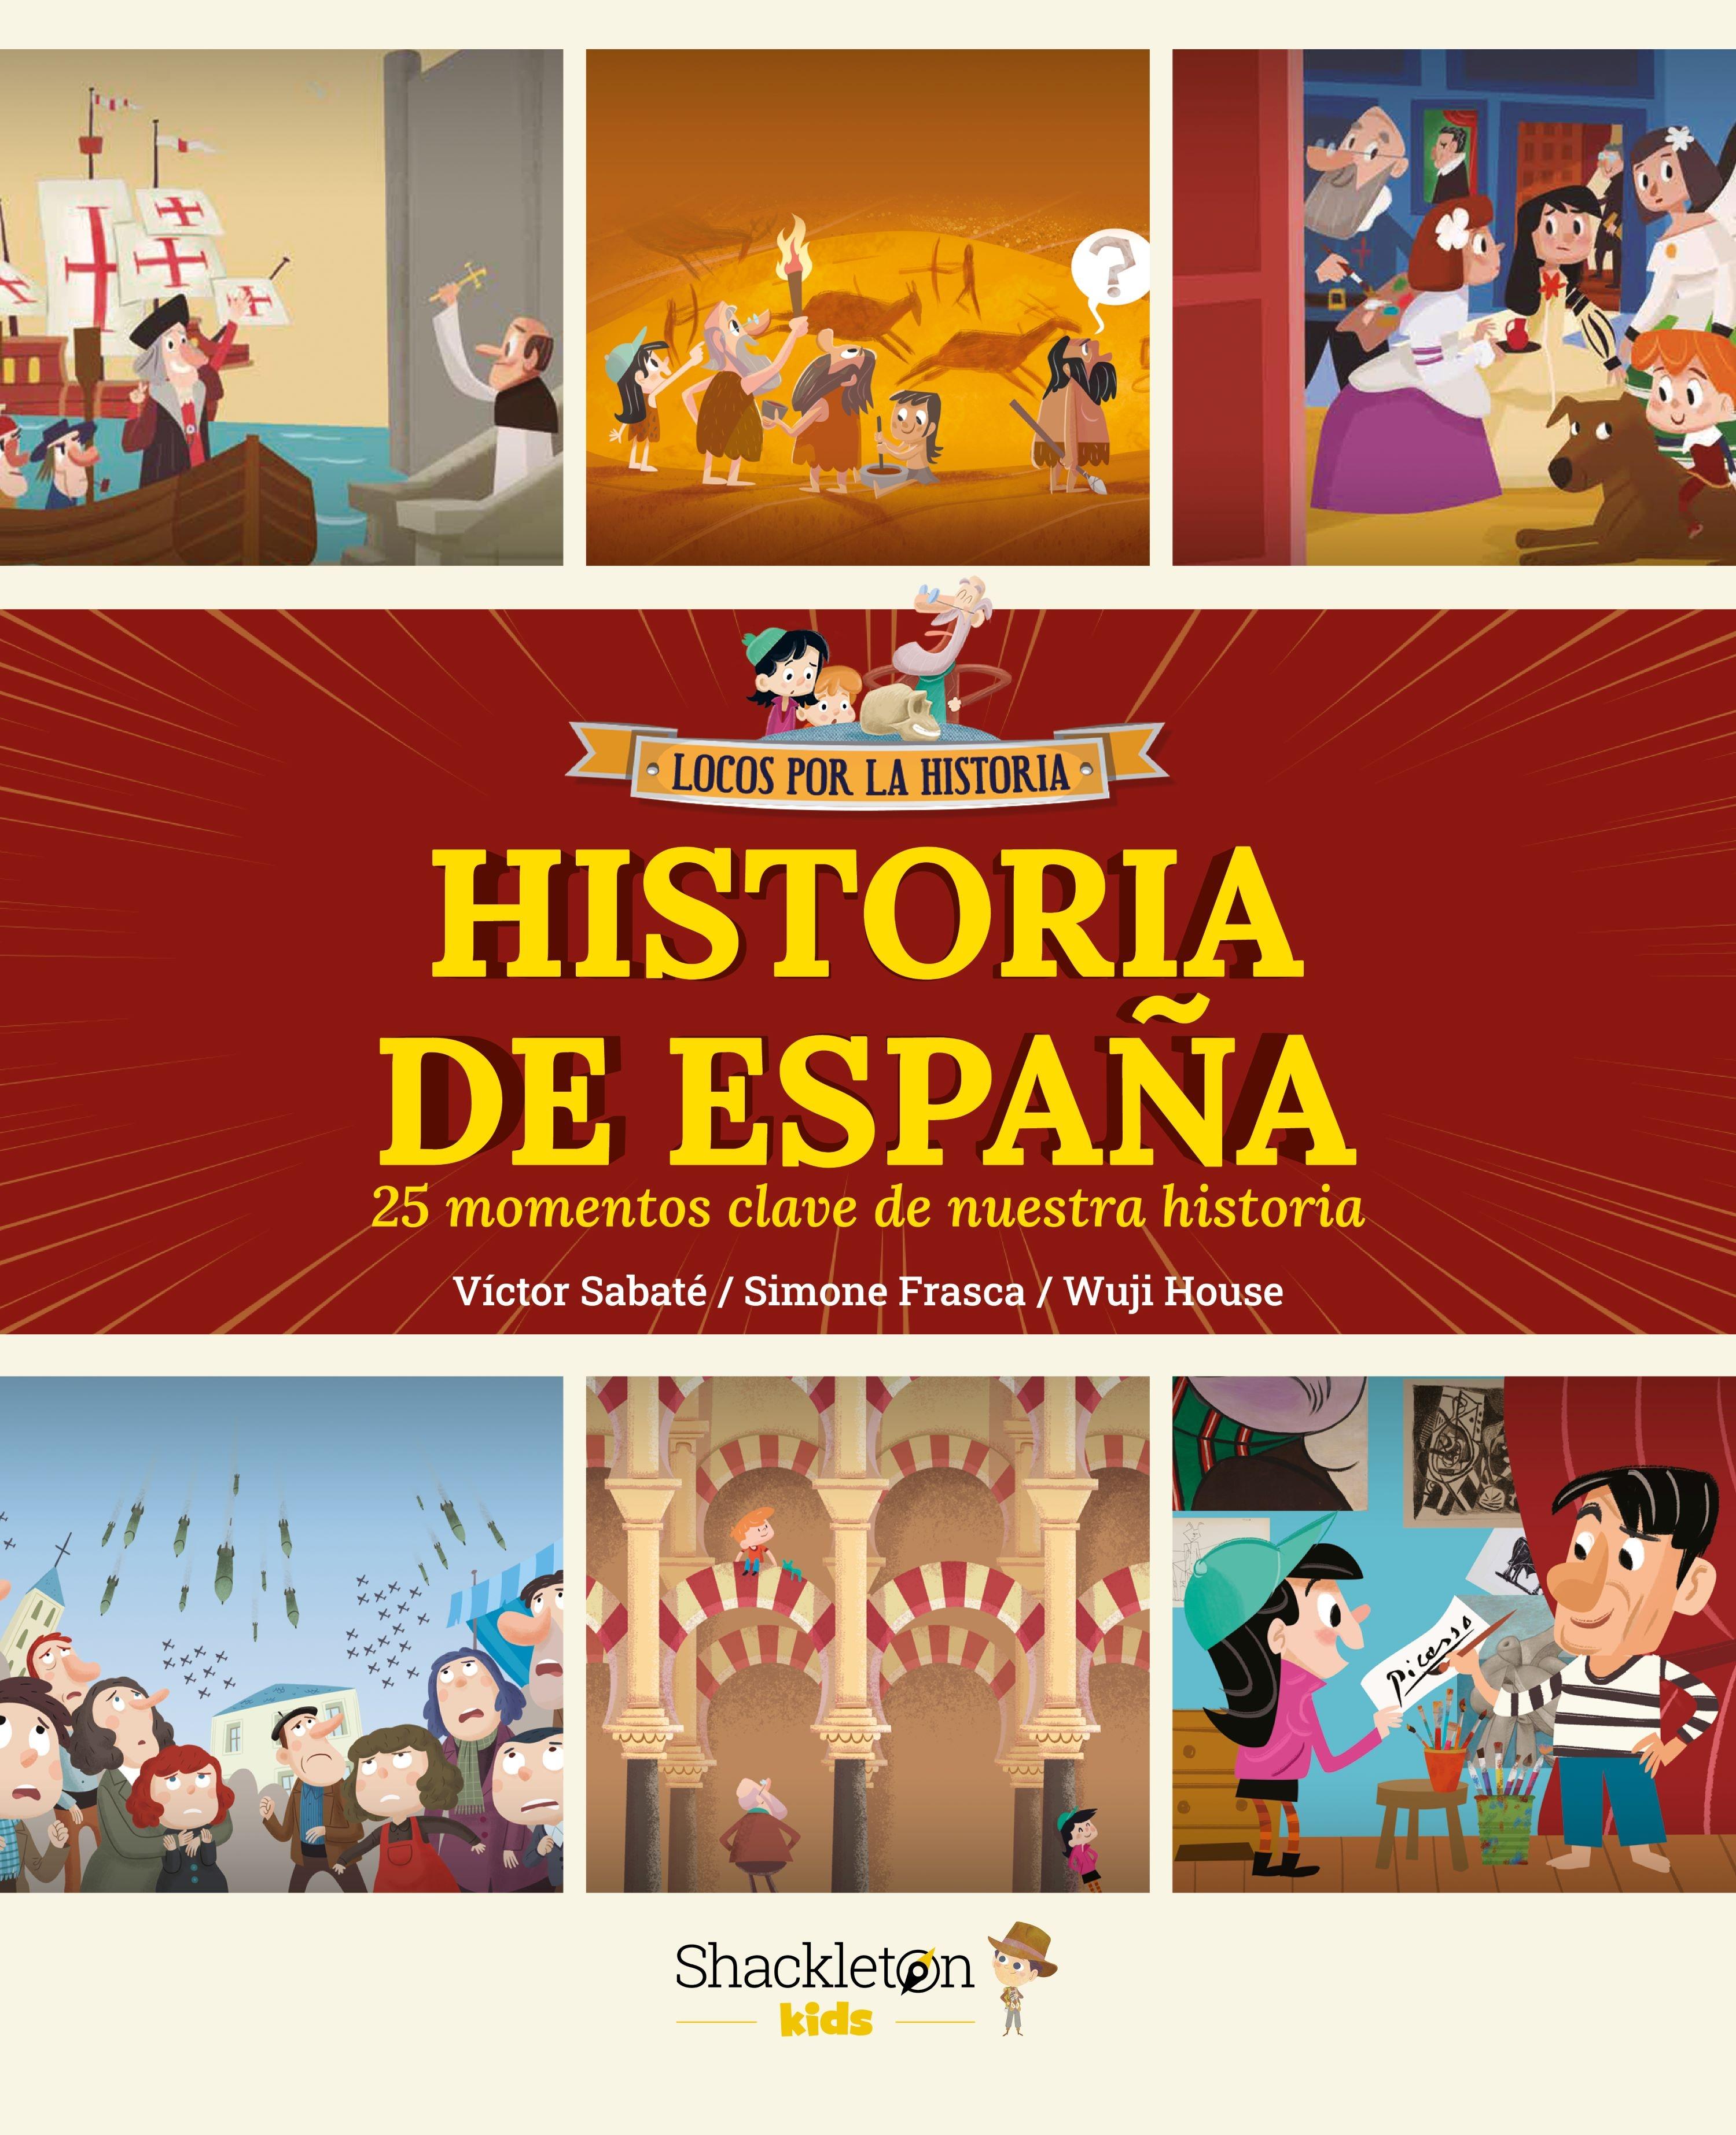 Historia de España "25 Momentos Clave de nuestra Historia". 